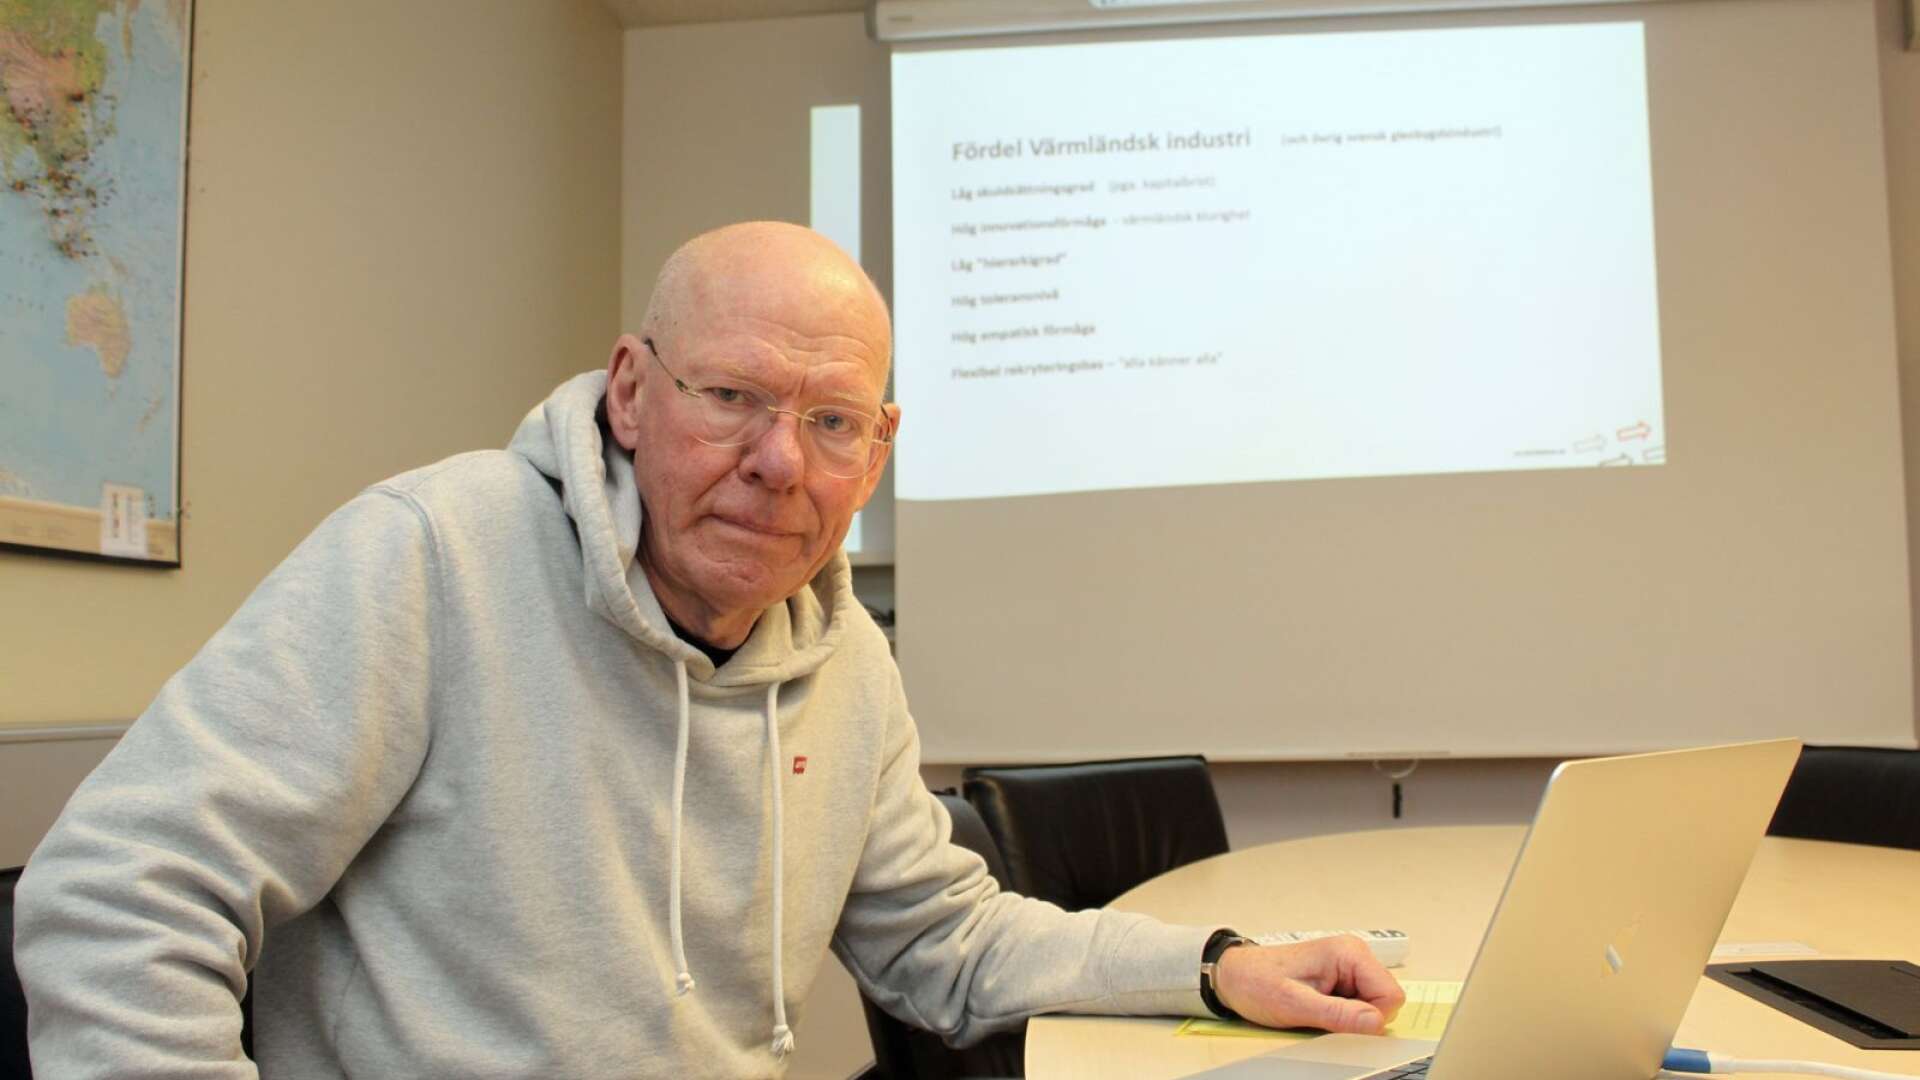 Industrin i Värmland och delar av Norrland sticker ut på ett positivt sätt i undersökningen, säger Kjell-Arne Edvinsson, värmländsk trendspanare.